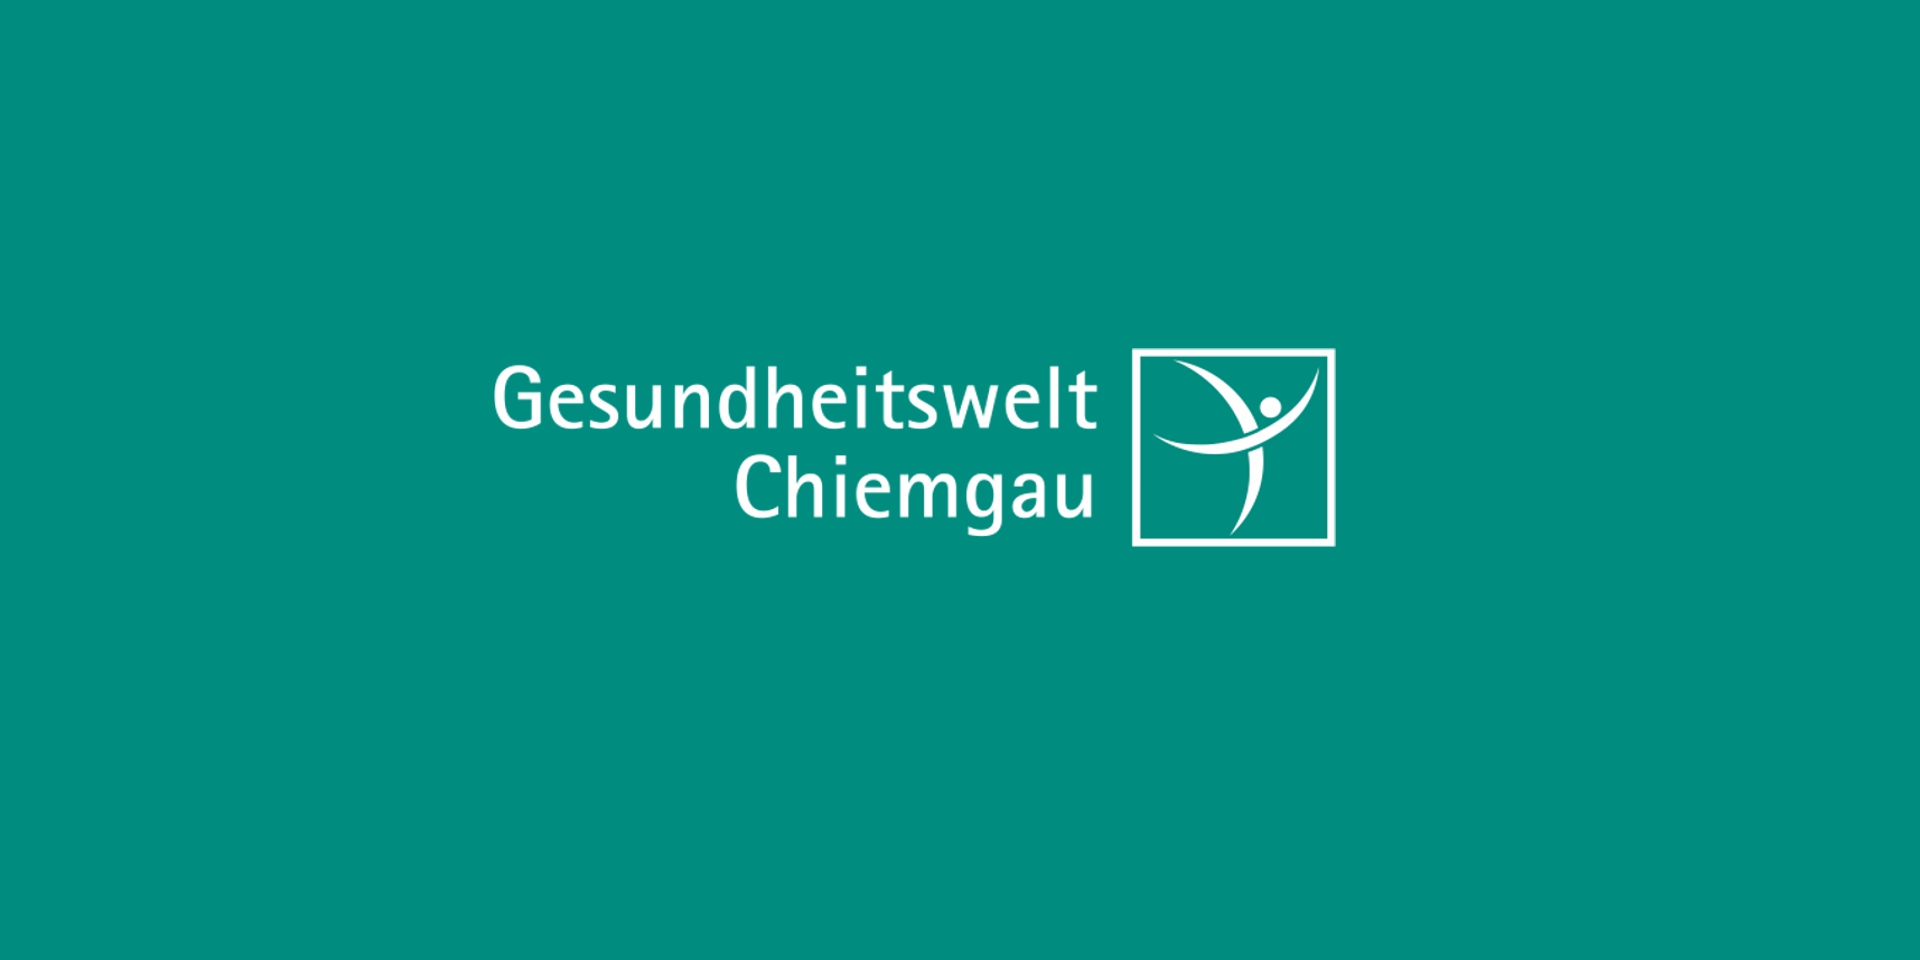 Die Gesundheitswelt Chiemgau AG.&nbsp;Modernste Prävention unter ganzheitlicher Betrachtungsweise